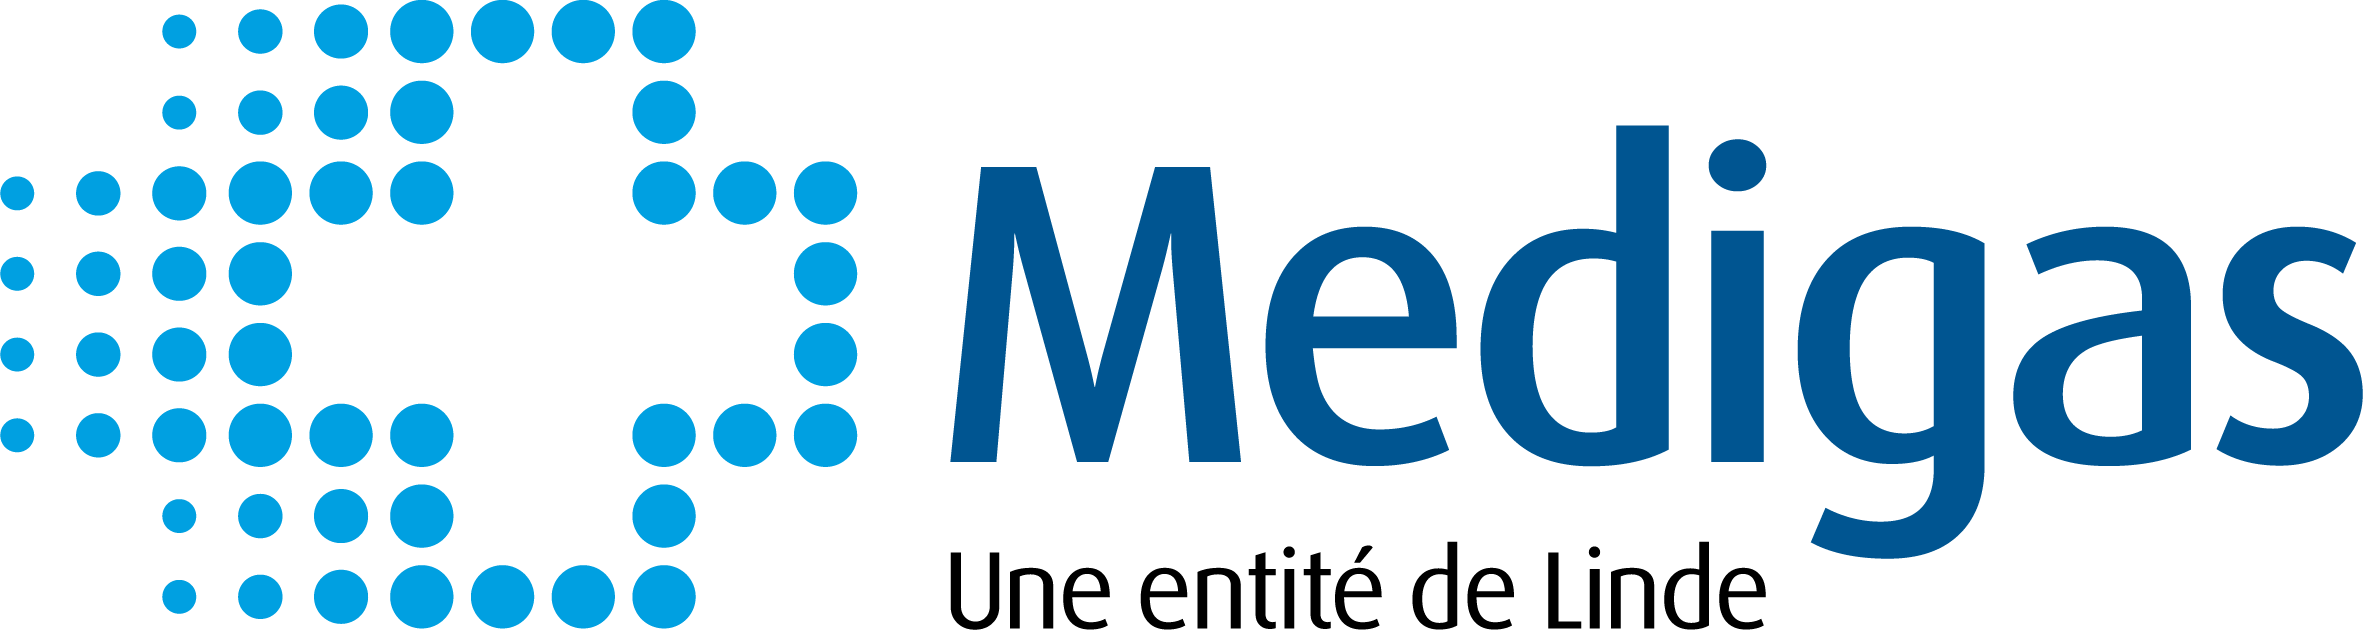 Logo Medigas, Sélectionnez pour accéder à la page d'accueil